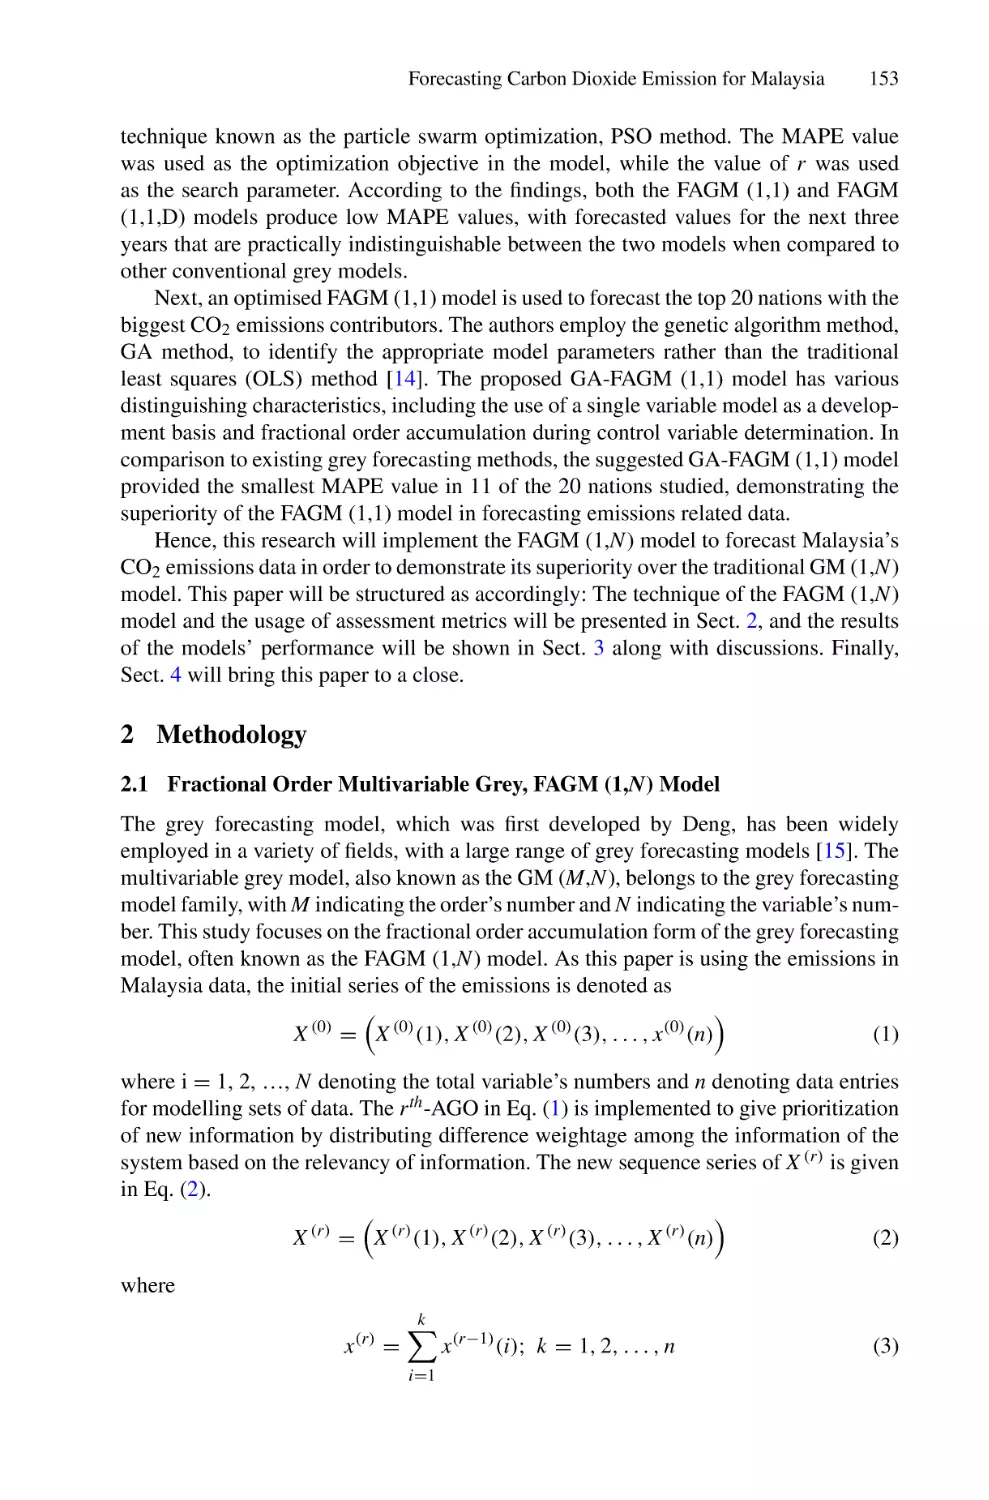 2 Methodology
2.1 Fractional Order Multivariable Grey, FAGM (1,N) Model